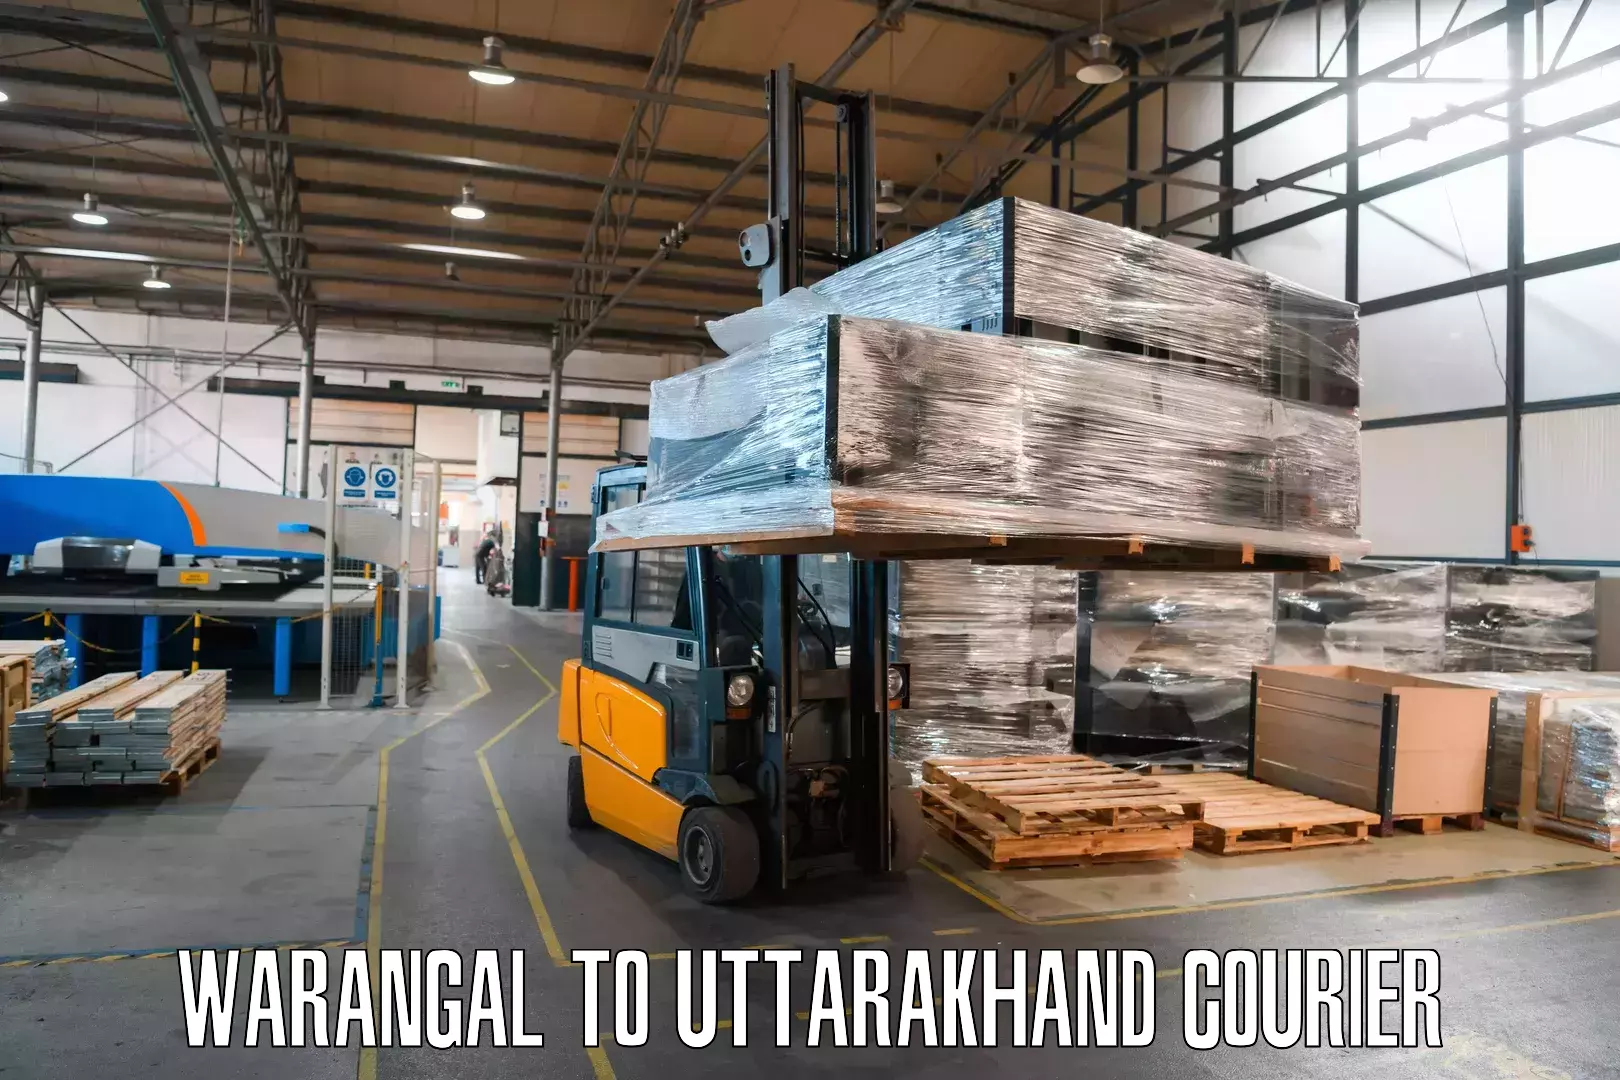 On-demand shipping options Warangal to Nainital